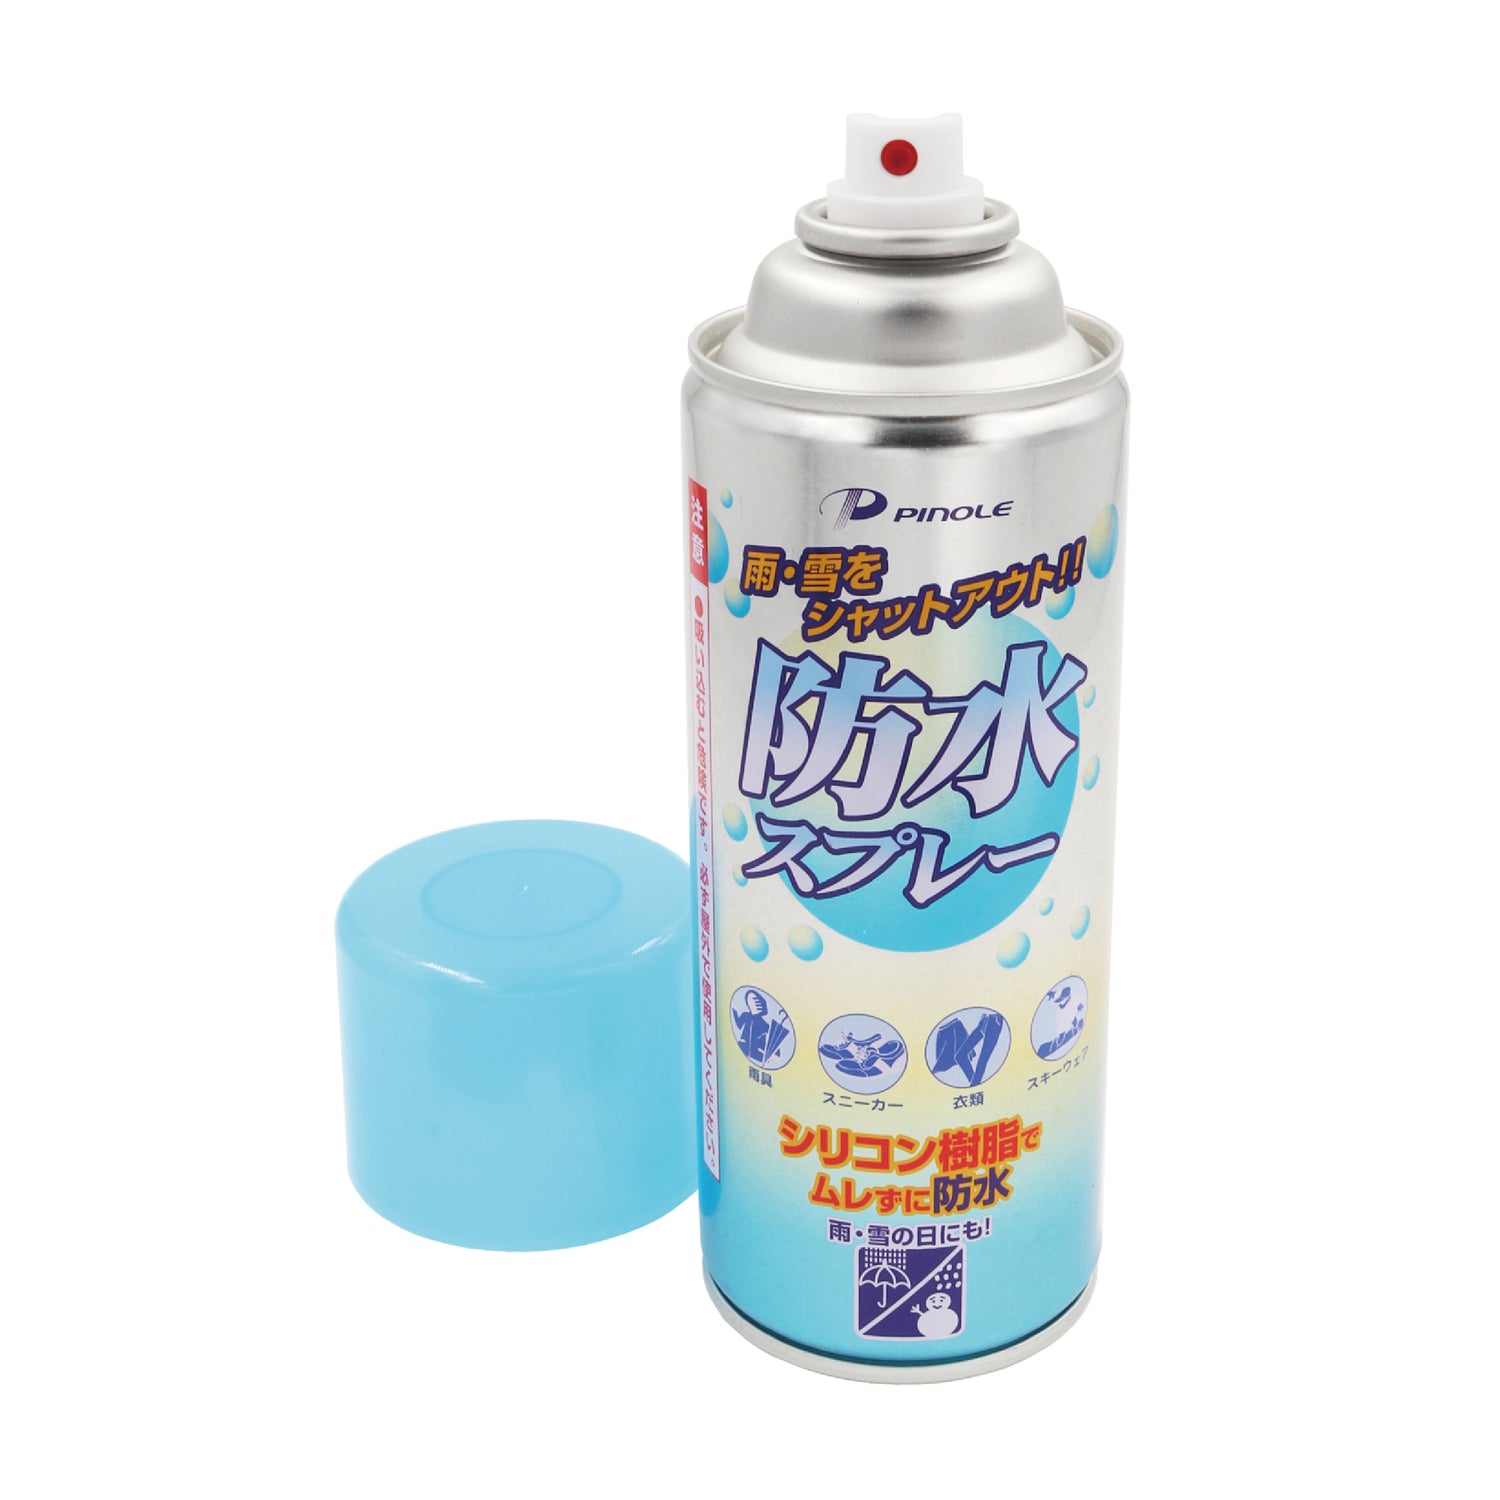 Resin Waterproof Spray 樹脂防水噴霧